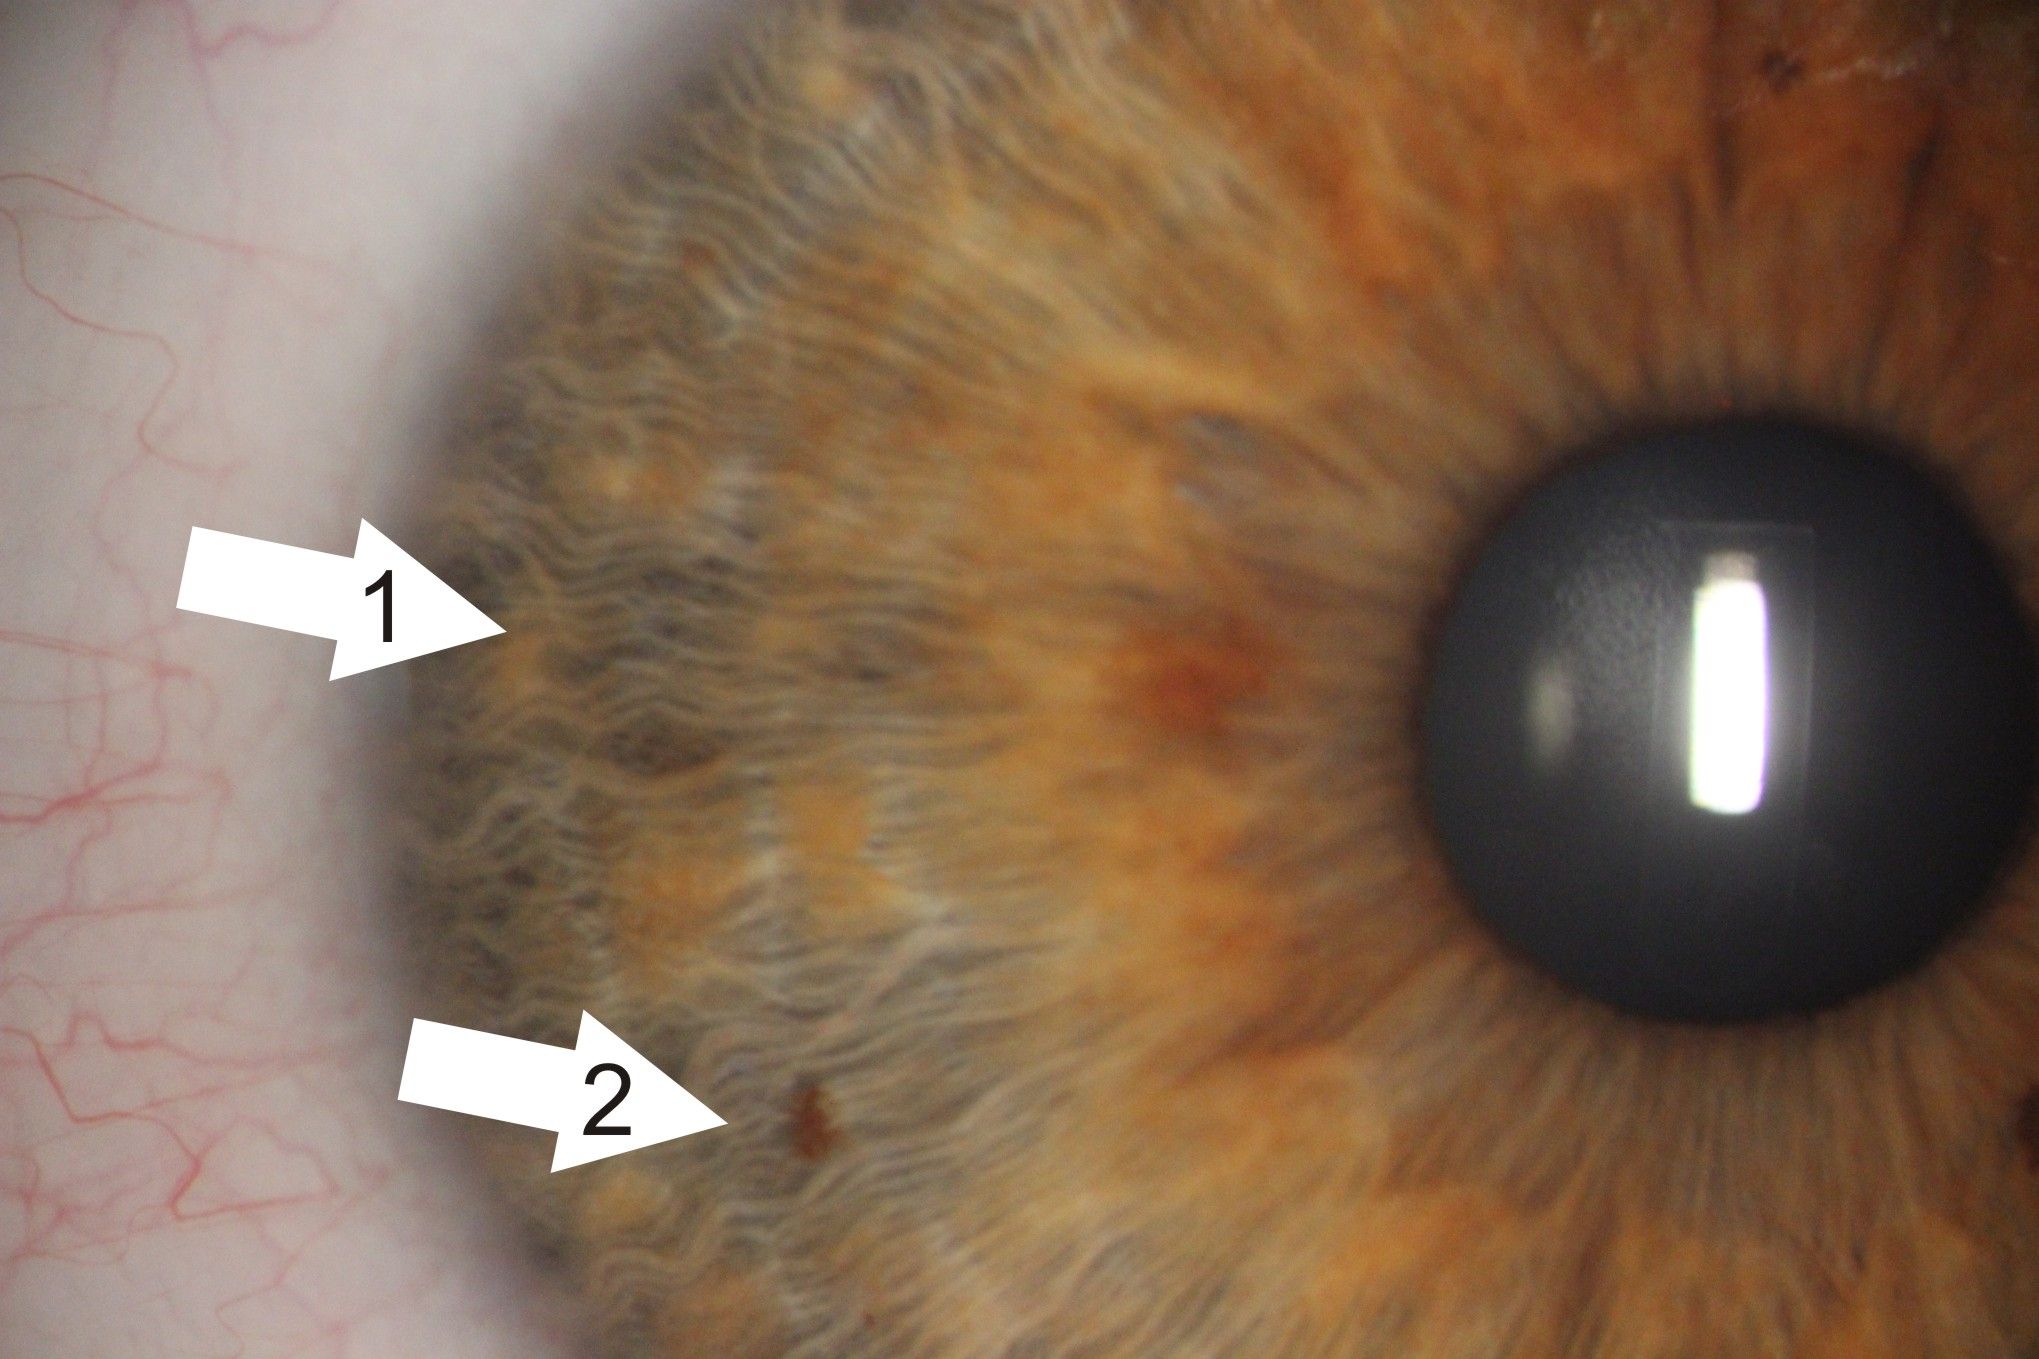 Zdjęcie tęczówki oka z aparatu podczas badania. Są zaznaczone strzałki wskazujące zmiany na tęczówce. 